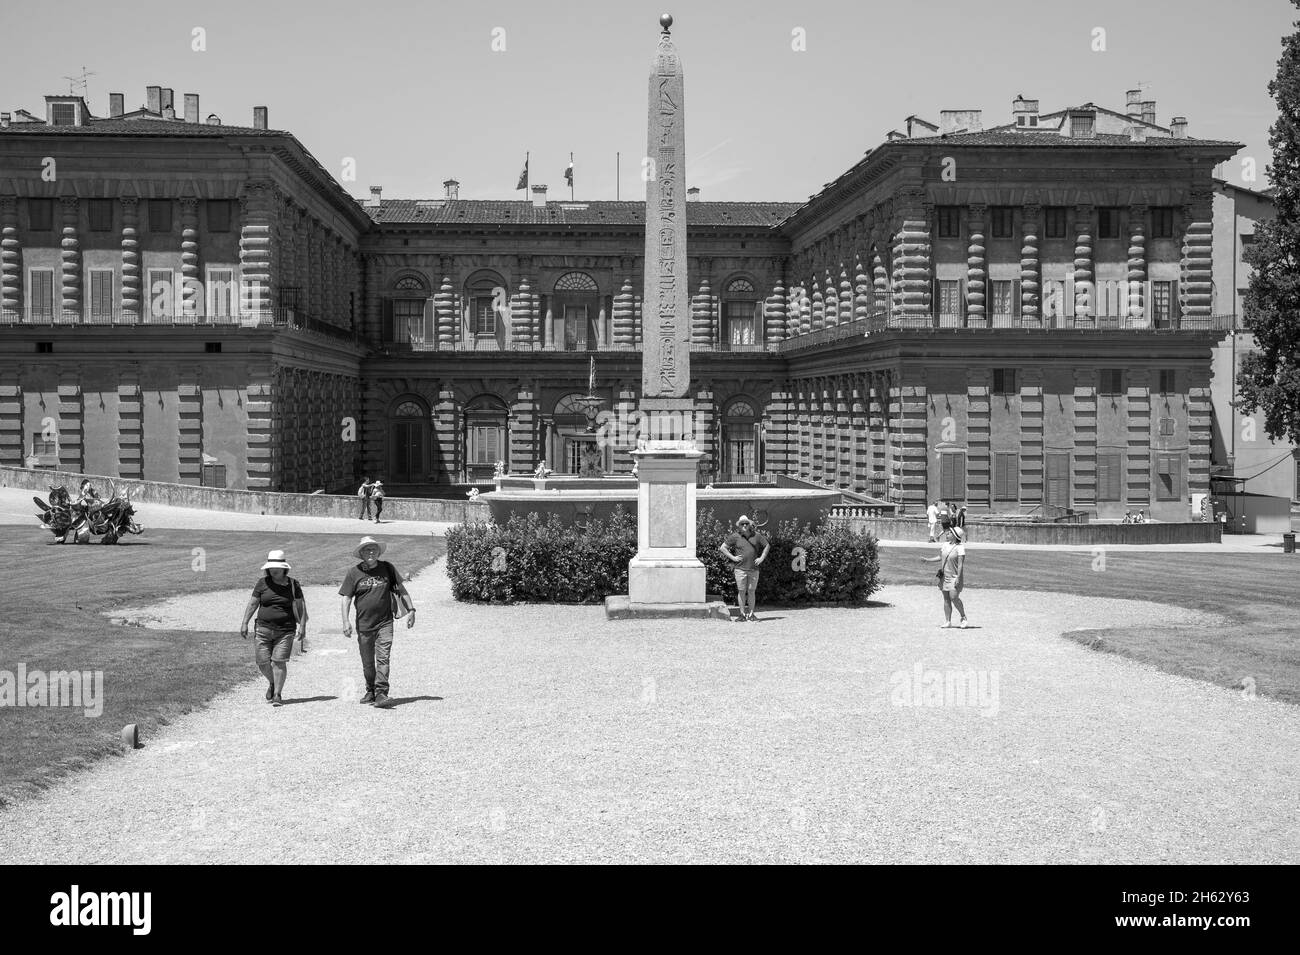 le parc des jardins de boboli (giardino di boboli), la fontaine de neptune et une vue lointaine sur le palais pitti, en anglais parfois appelé le palais pitti, à florence, en italie. Banque D'Images